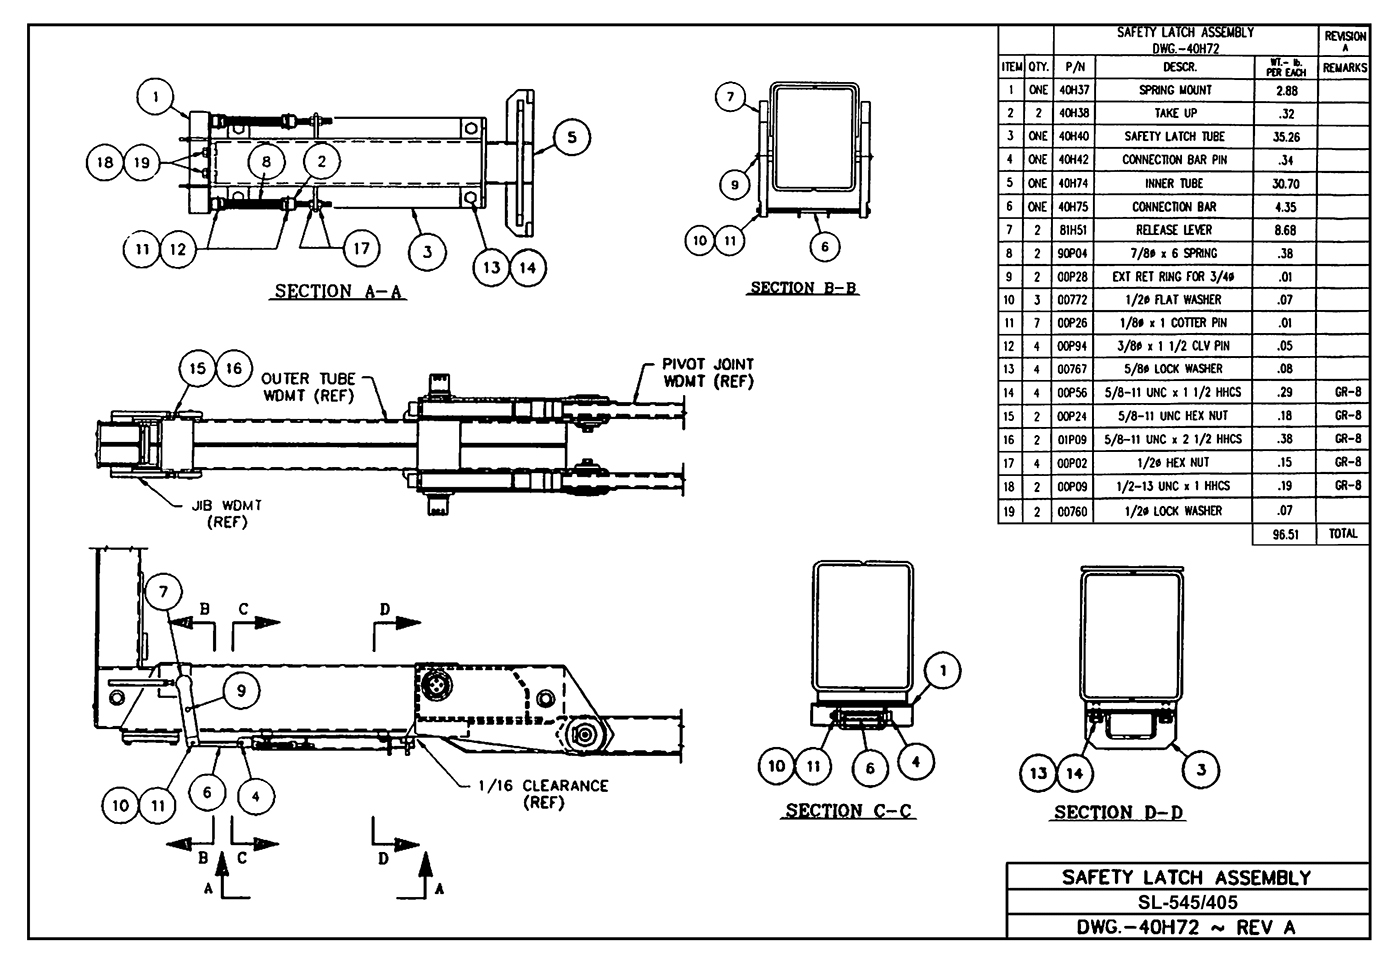 Sl-545/405 Safety Latch Assembly Diagram